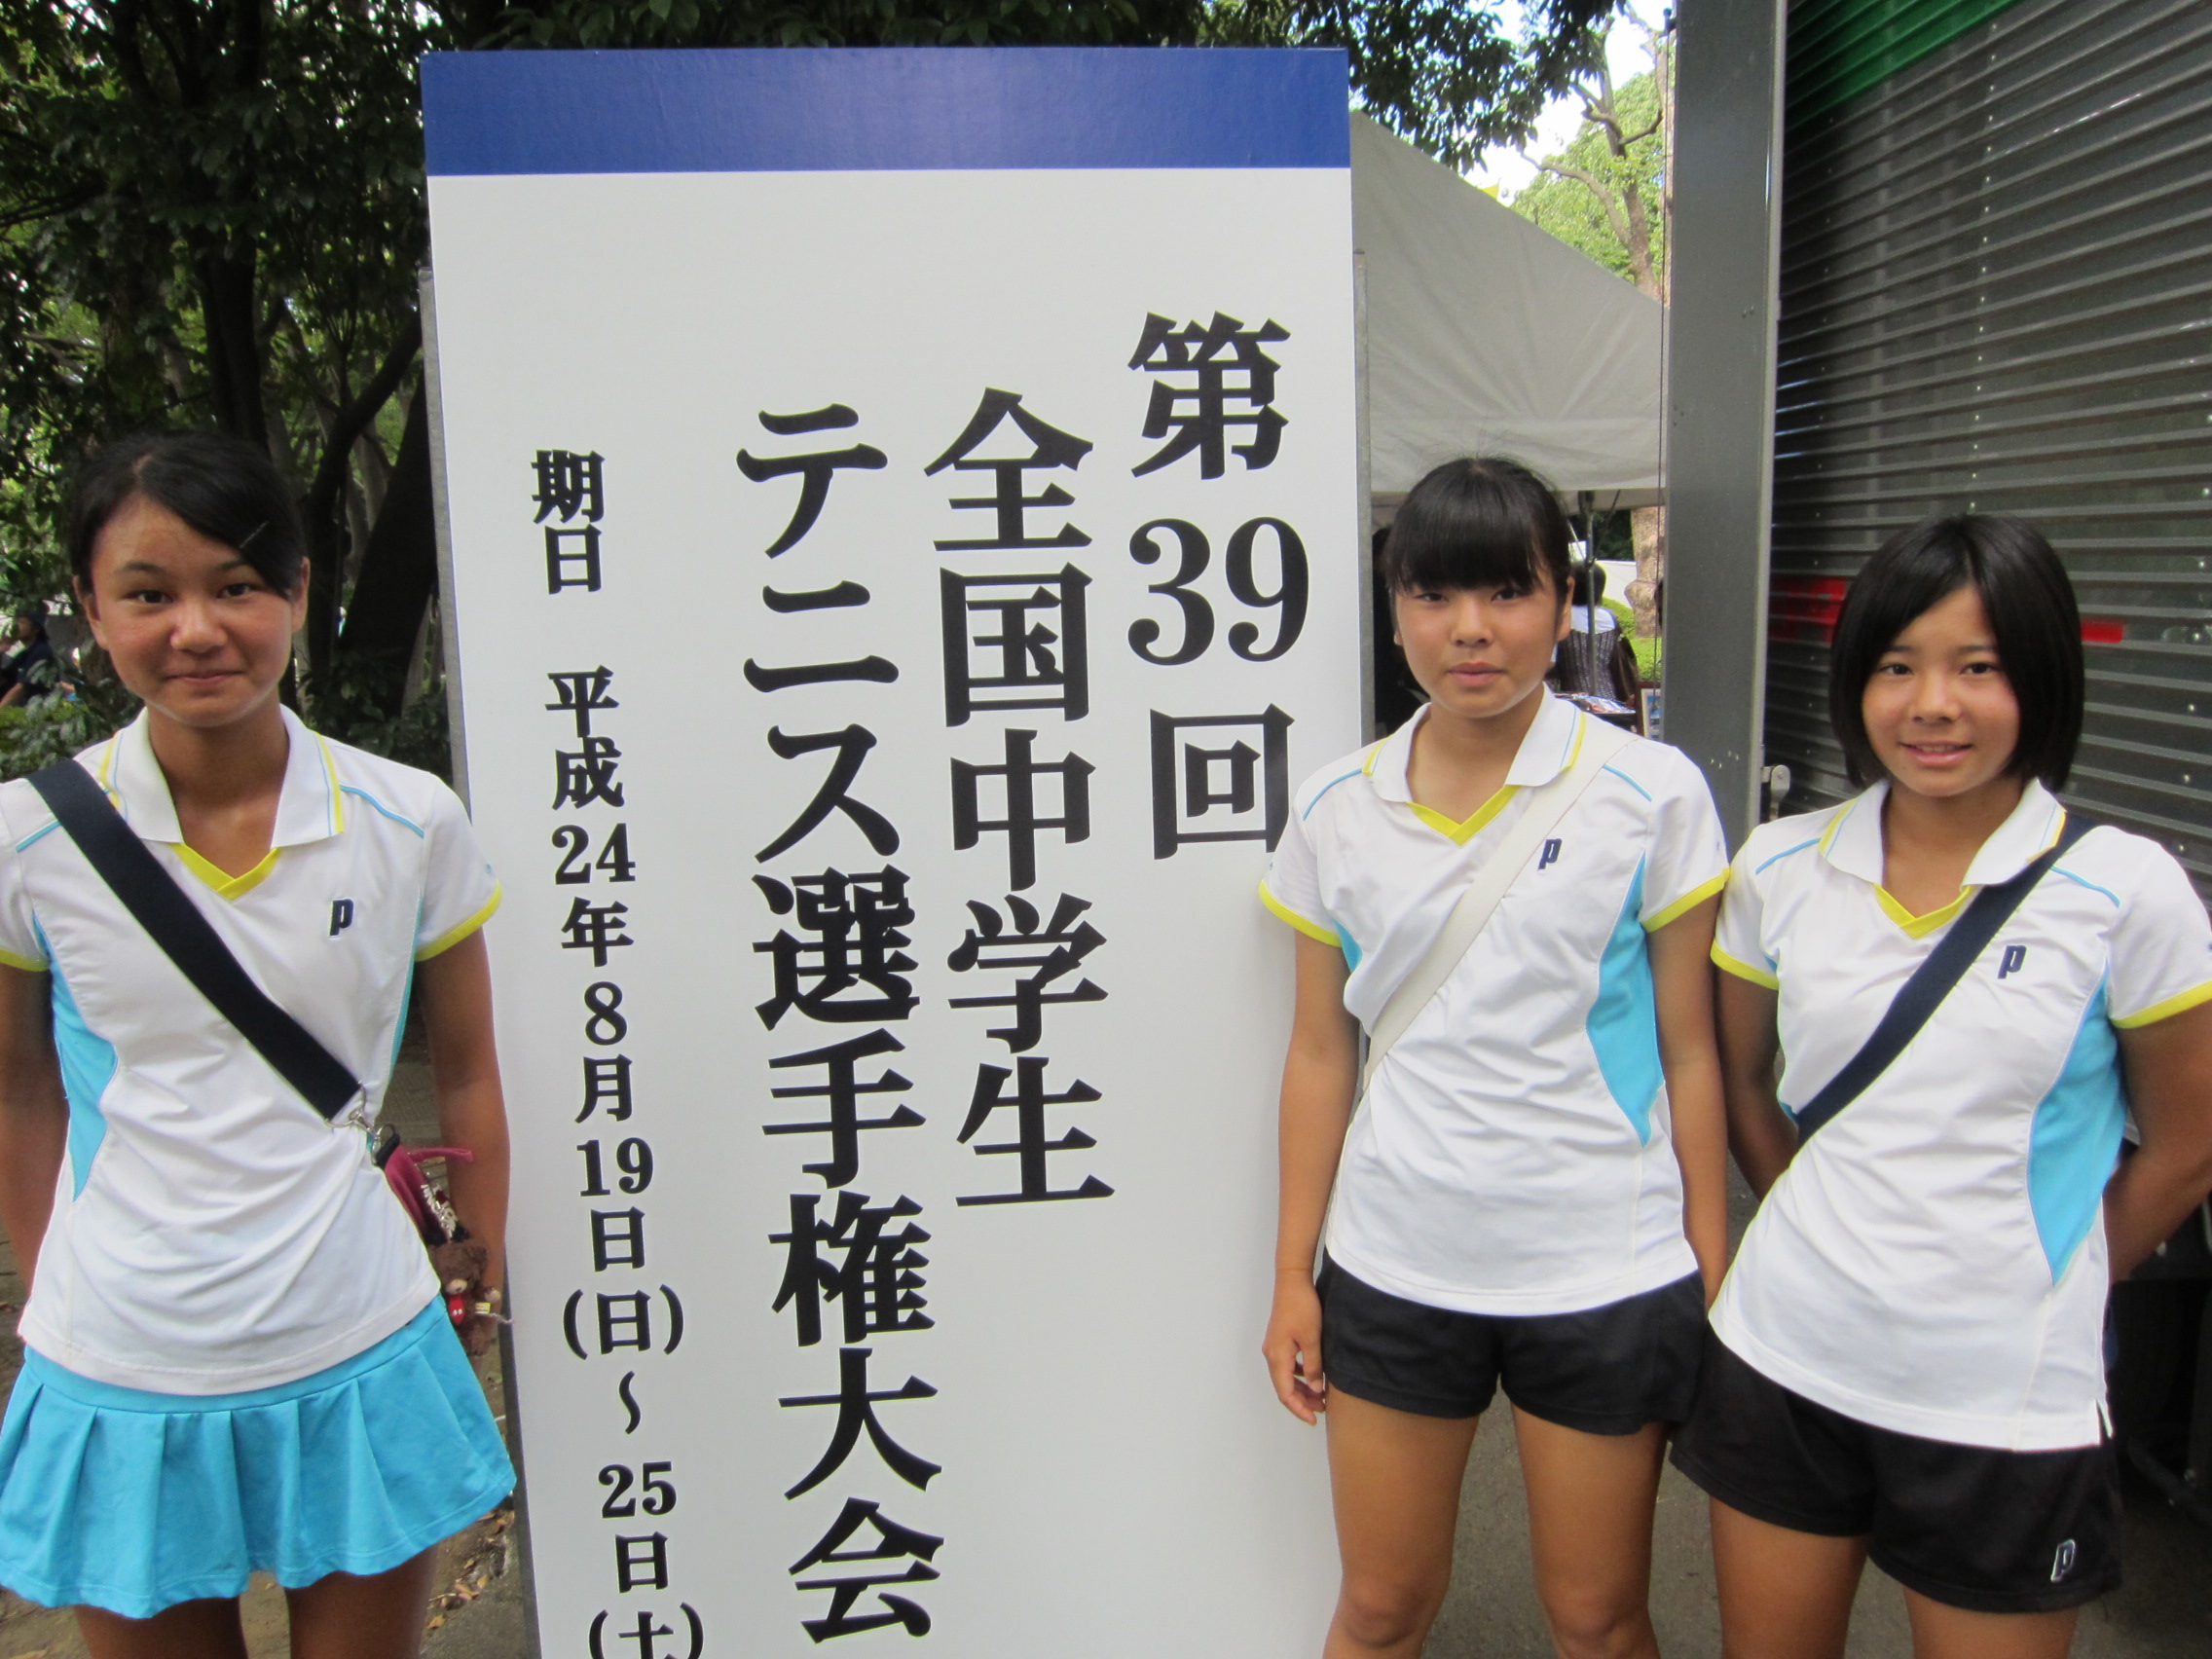 全国中学生テニス選手権大会 チームjinjr